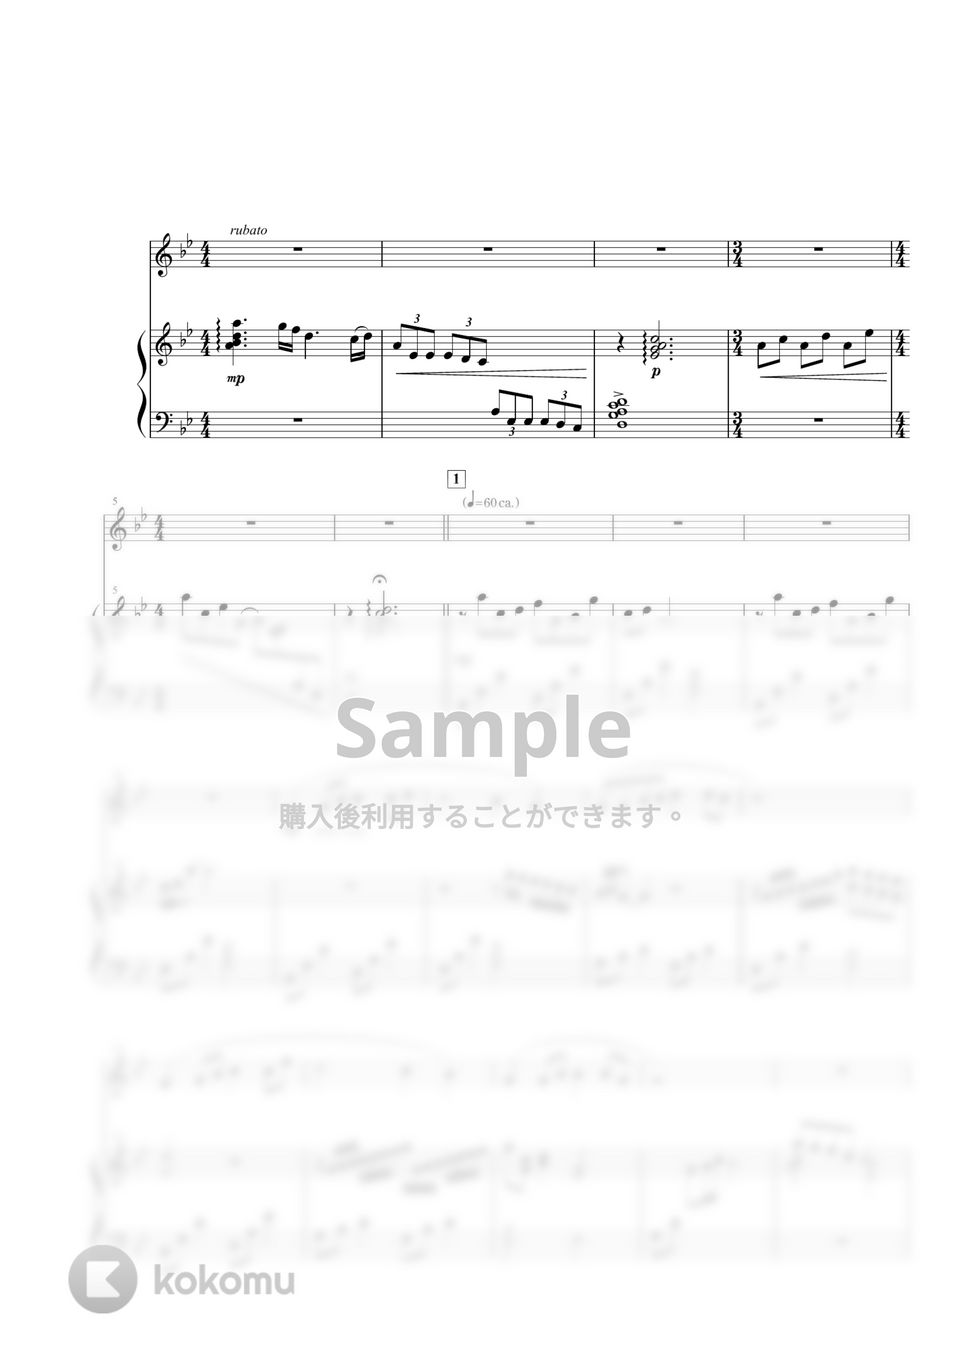 竹田の子守唄 (尺八+二十絃 / スコア+パート譜) by 相澤洋正